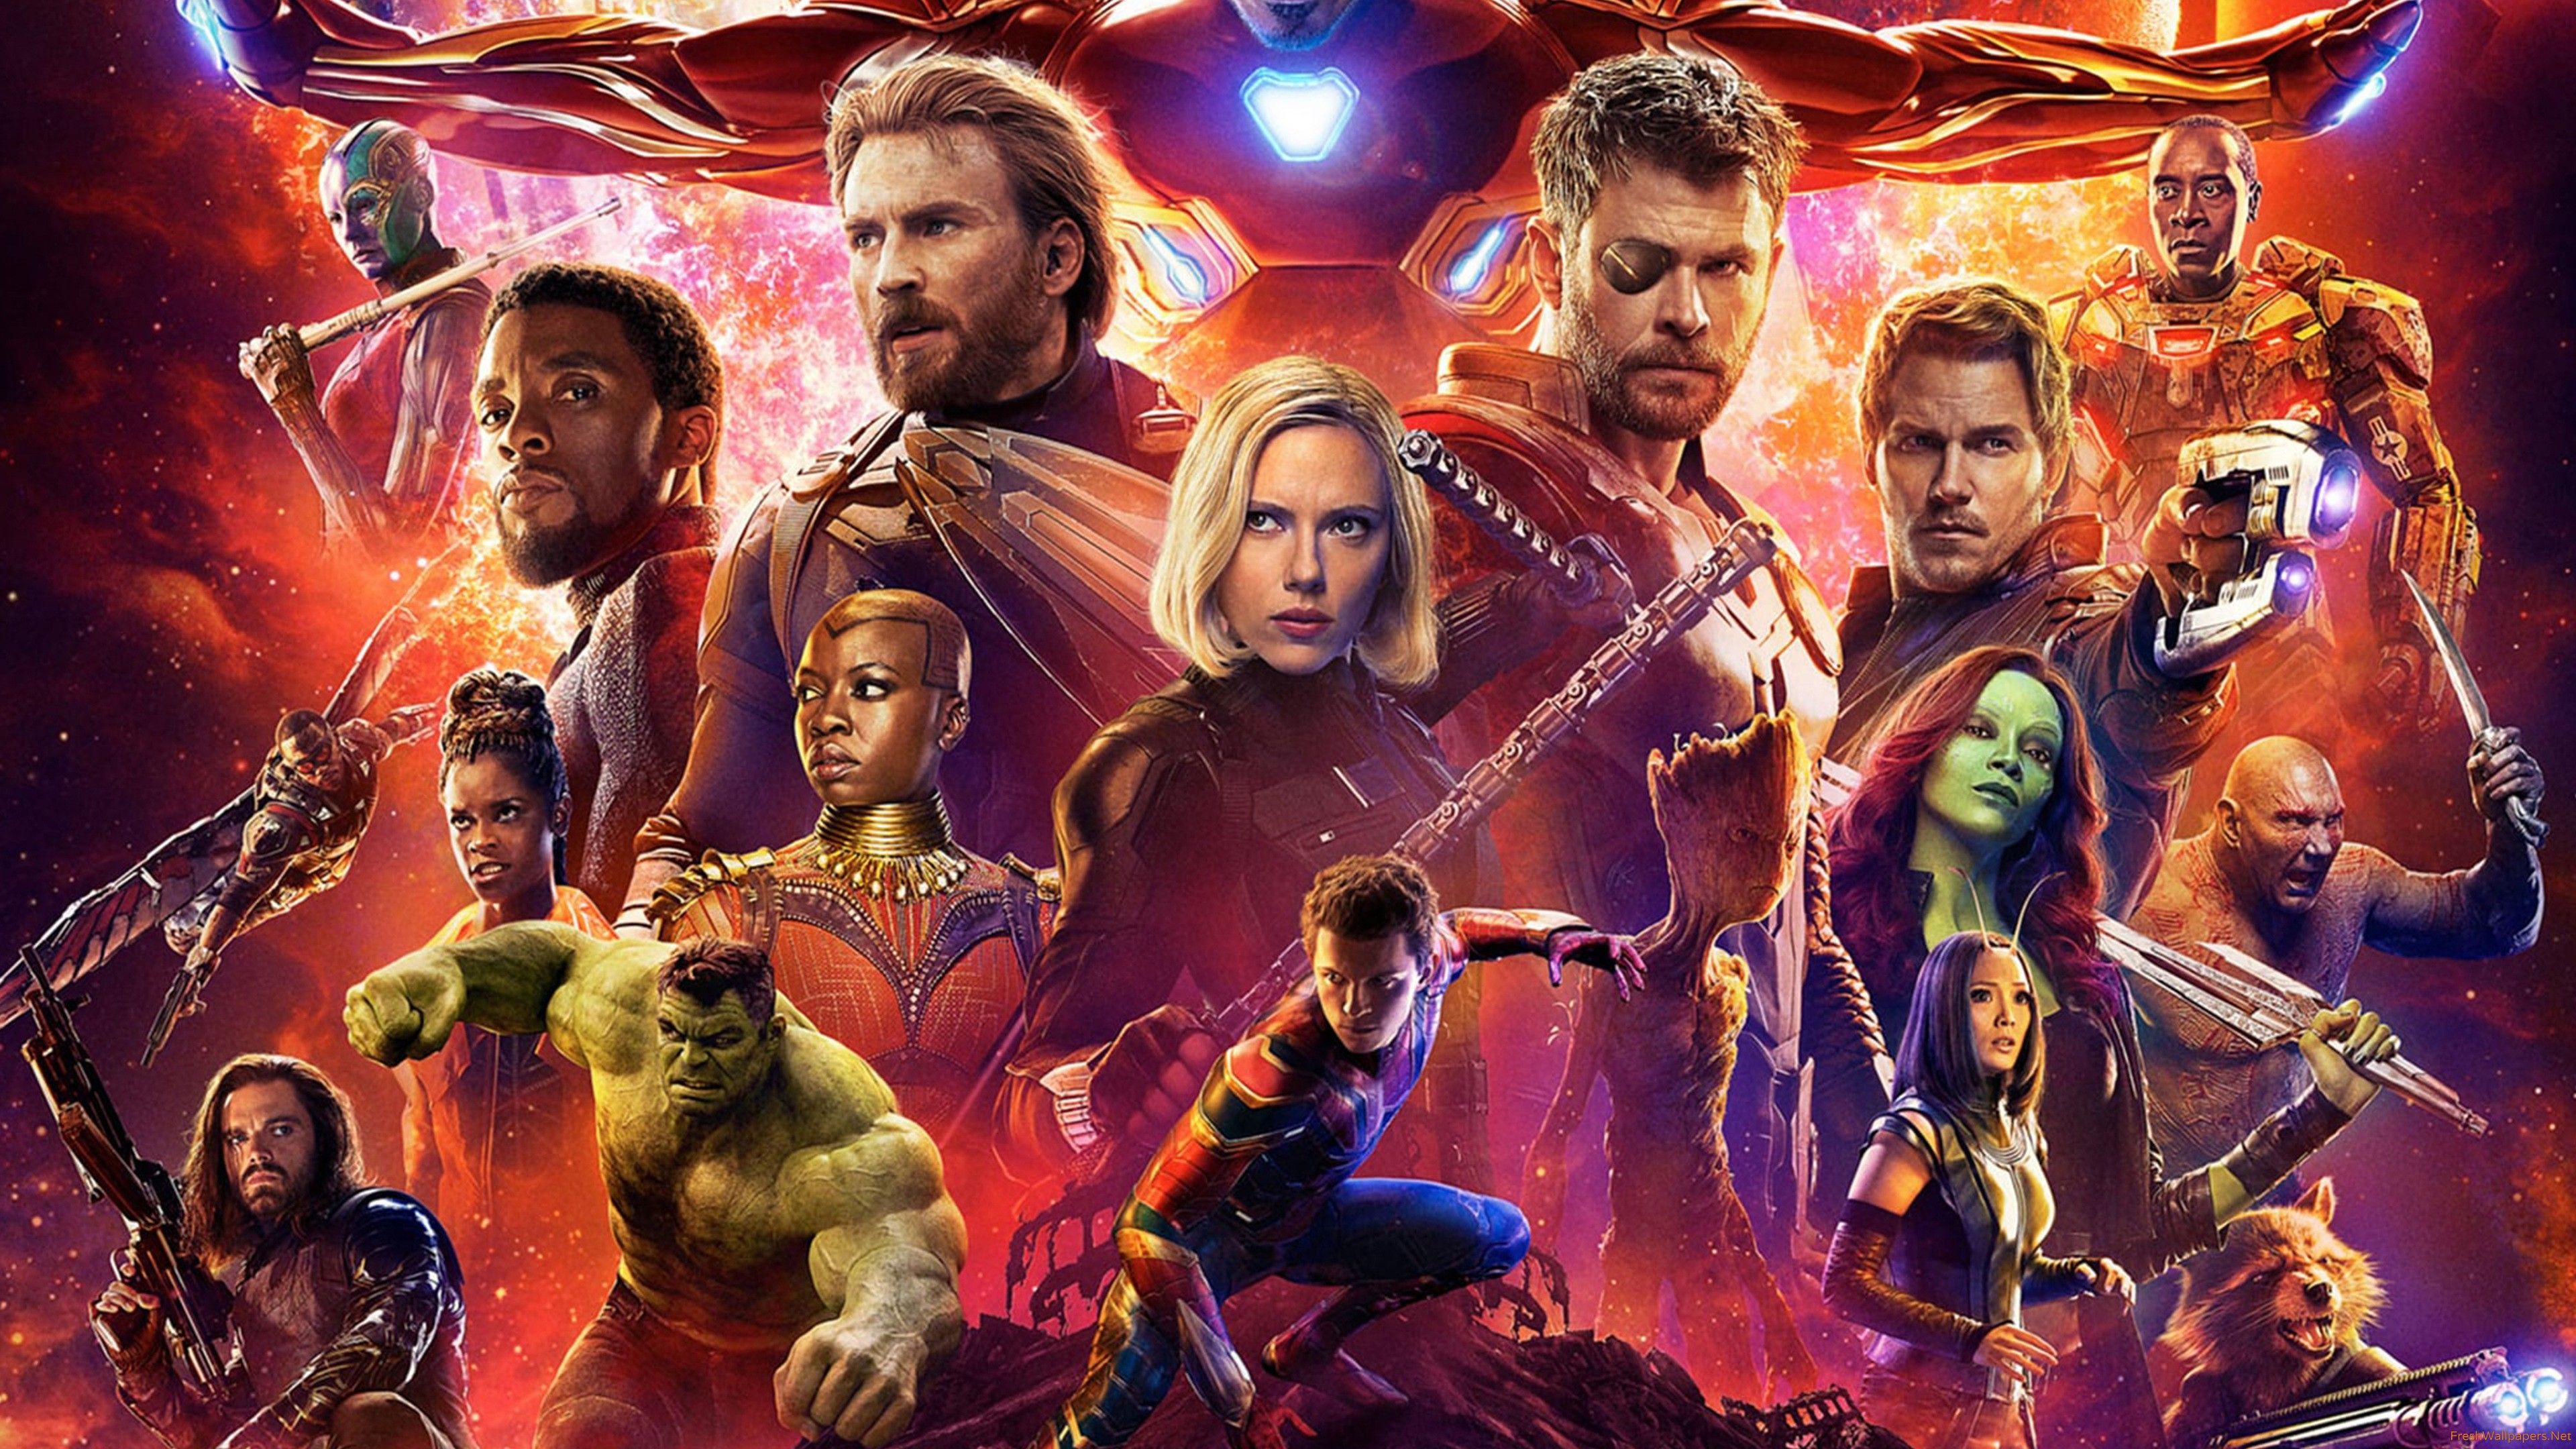 Avengers Infinity War Poster Widescreen Wallpaper Free Avengers Infinity War Poster Widescreen Background